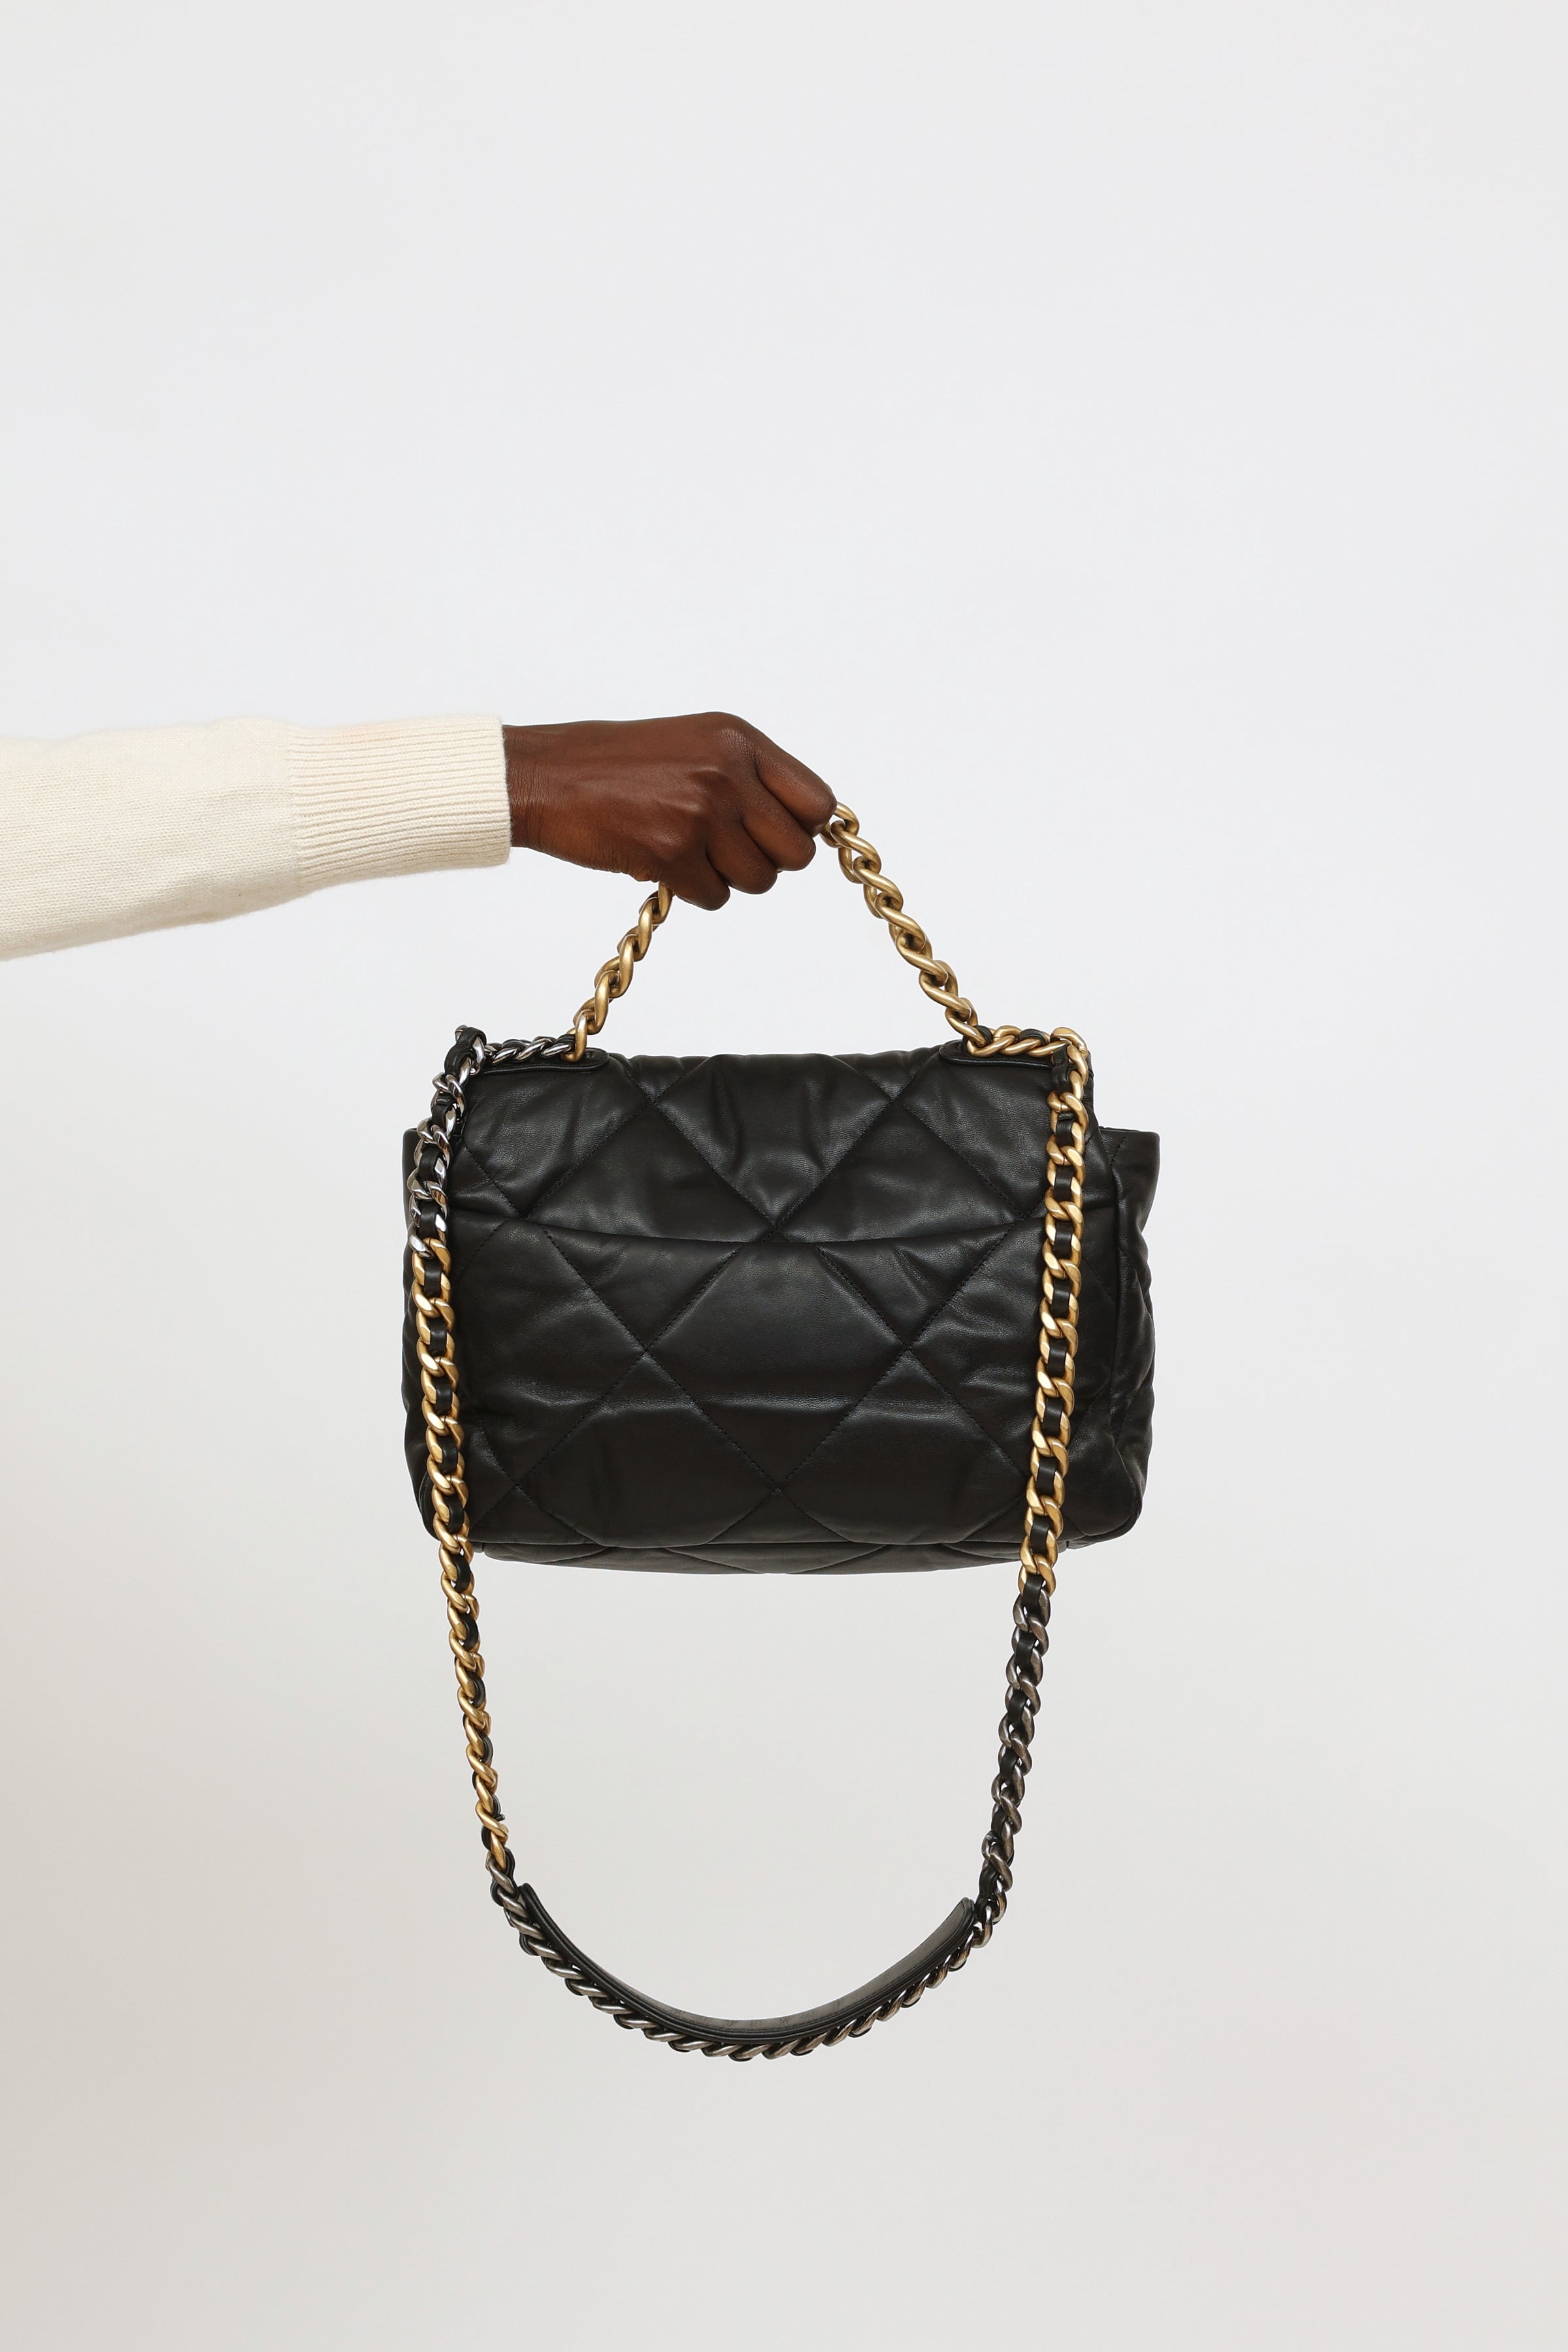 Chanel // 2020 Black 19 Goatskin Medium Quilted Flap Bag – VSP